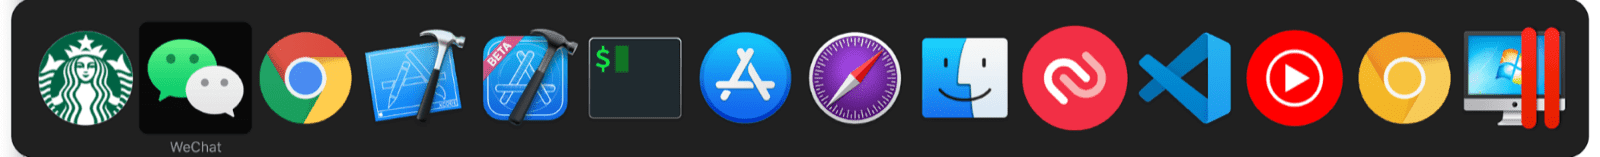 Trình chuyển đổi đa nhiệm của macOS bao gồm các ứng dụng nhỏ bên cạnh ứng dụng macOS thông thường.